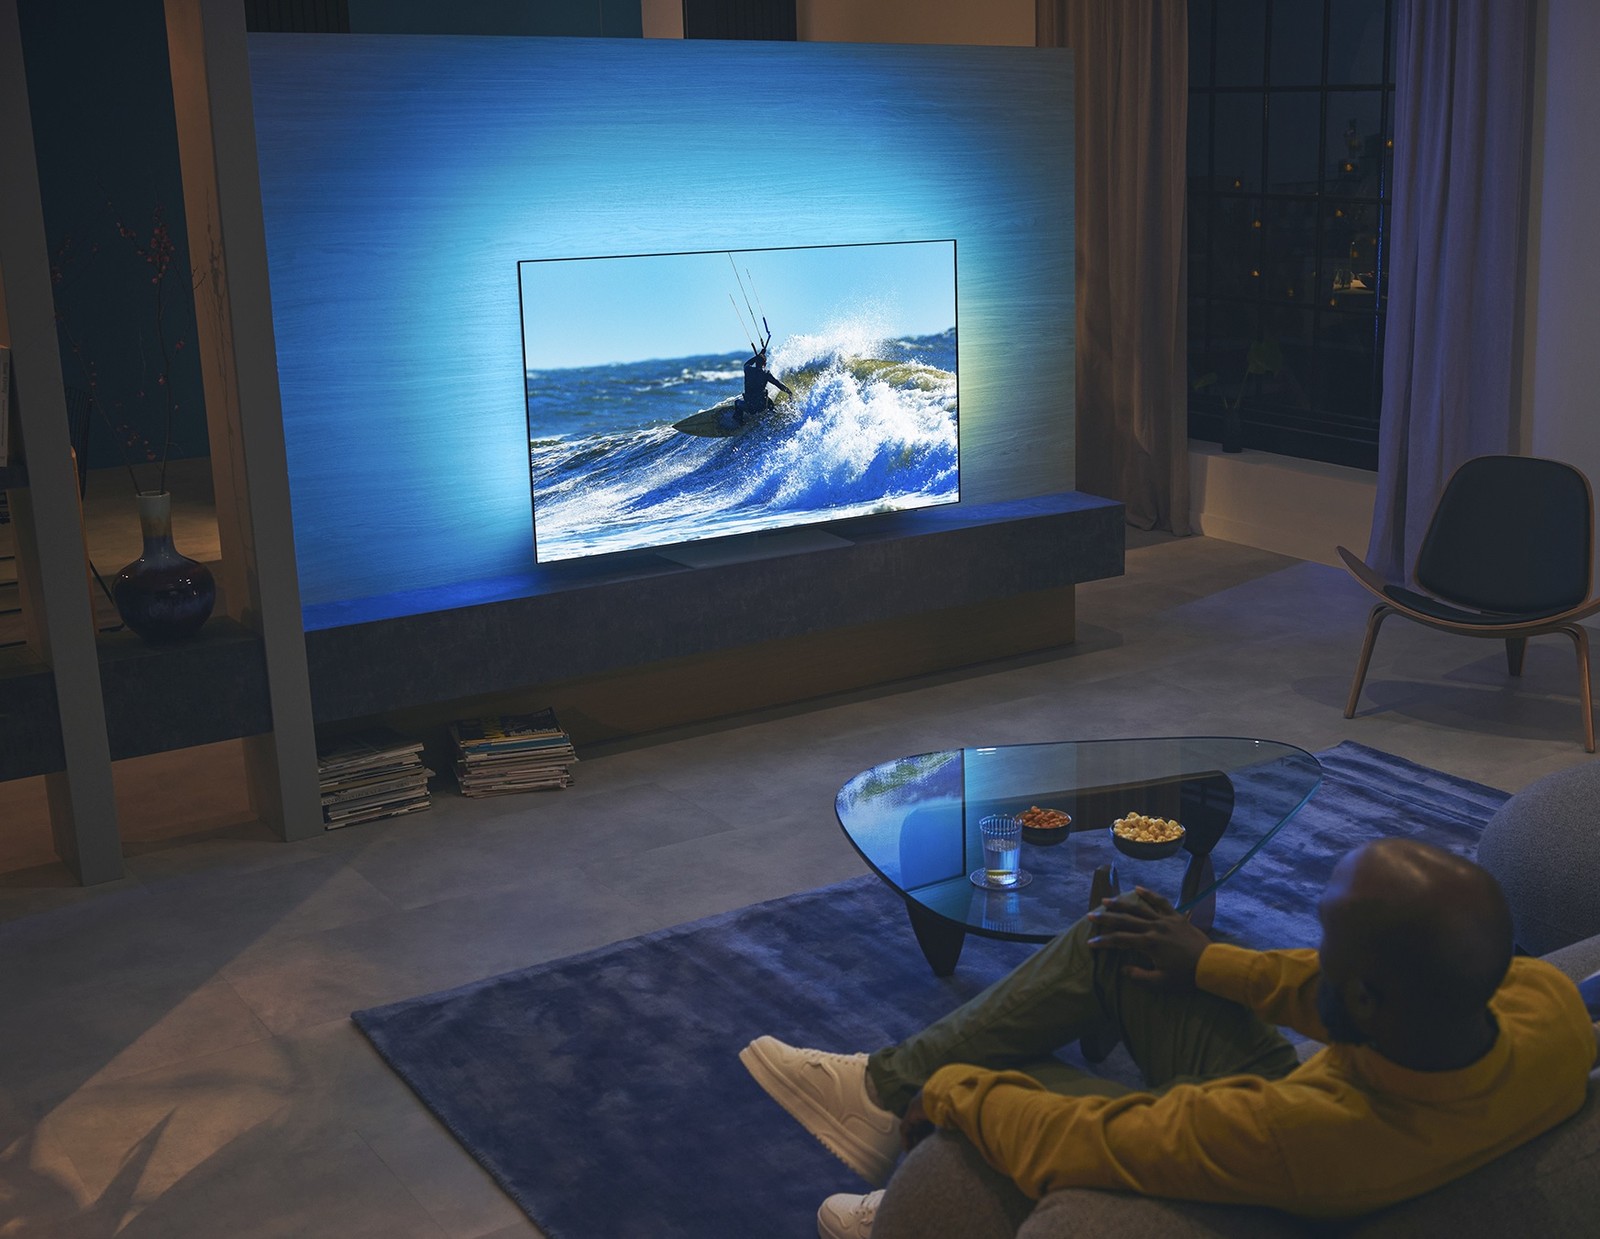 Nowa jakość w telewizorach. Philips OLED818 dopasuje kolory obrazu do pory dnia i oświetlenia salonu